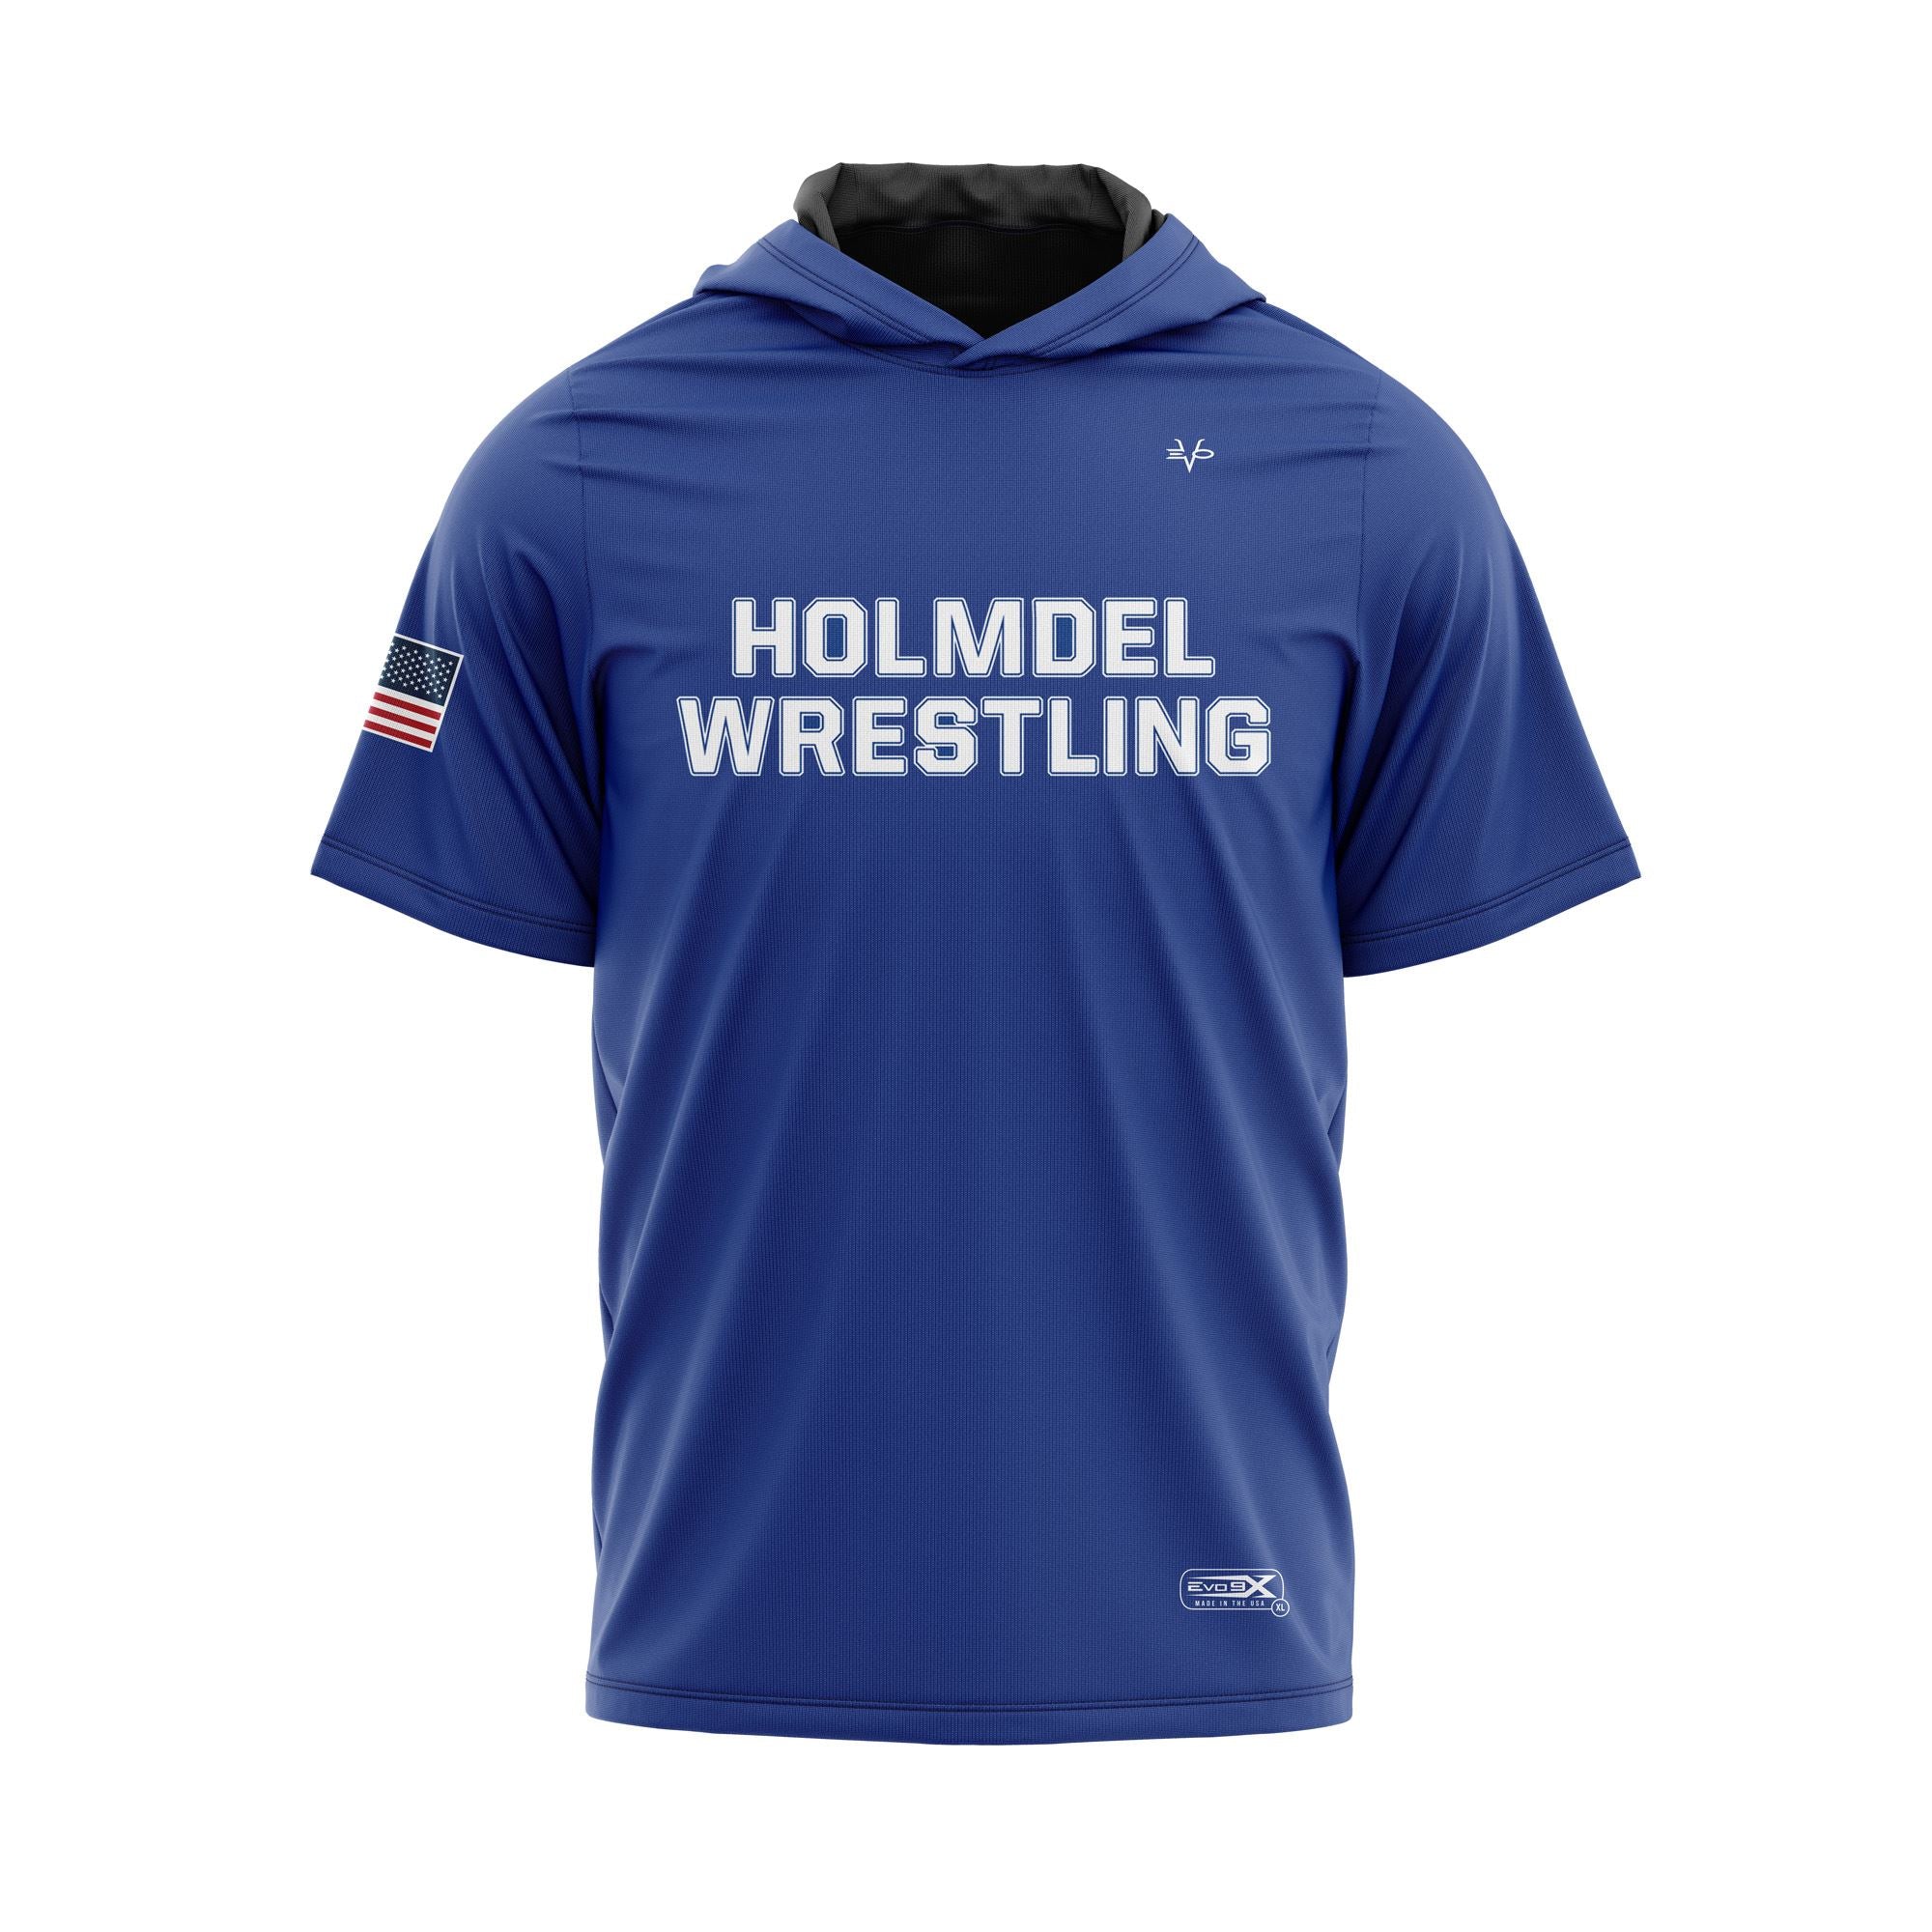 HOLMDEL WRESTLING Sublimated Lightweight Short Sleeve Blue Hoodie